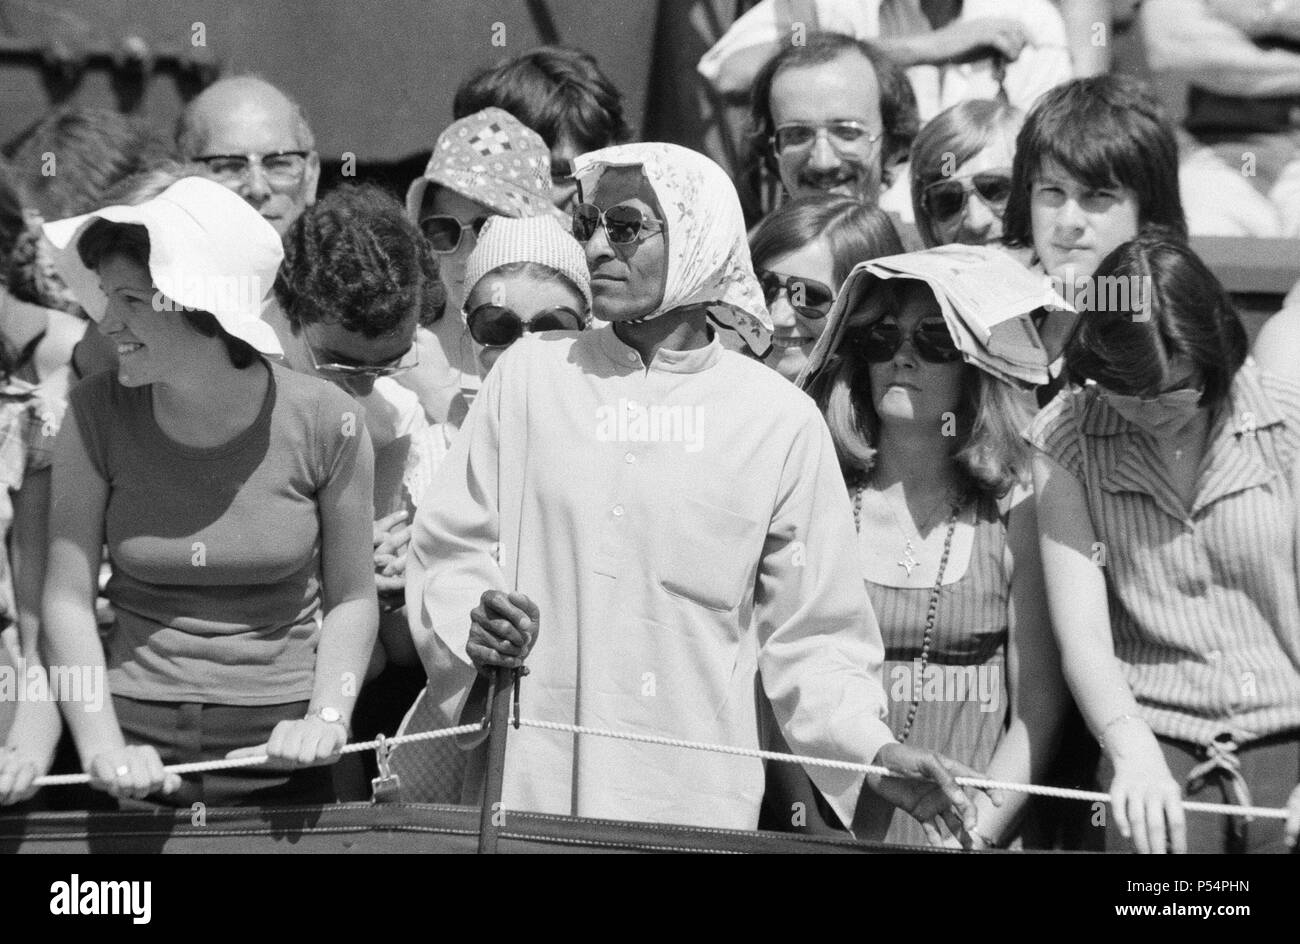 Tennis de Wimbledon, le jeudi 24 juin 1976. Notre photo montre ... Au cours des scènes de foule, les spectateurs à couvrir la tête de chaleur intense de soleil. Banque D'Images